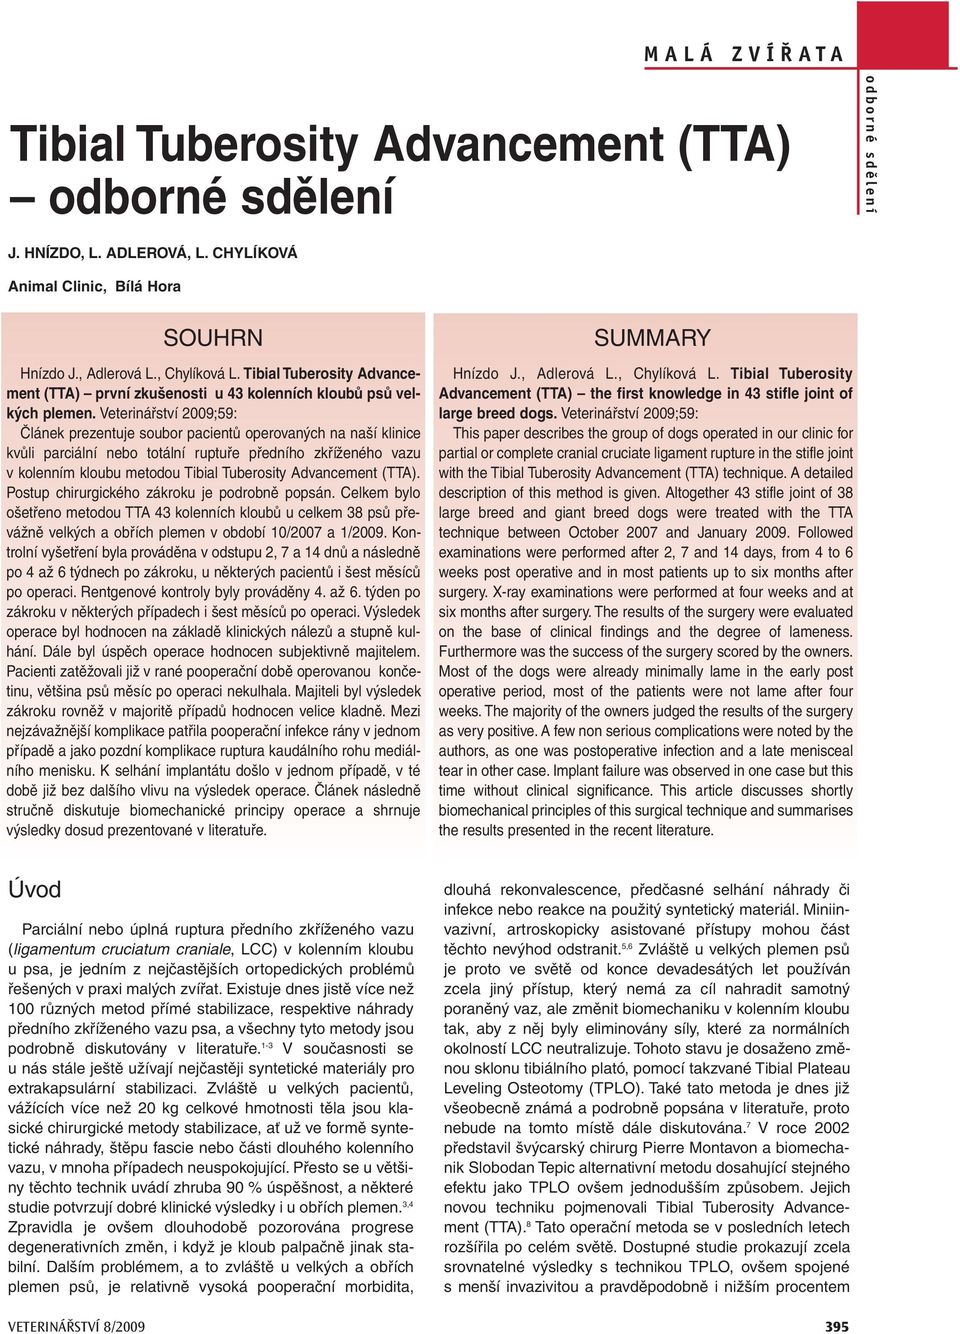 Veterinářství 2009;59: Článek prezentuje soubor pacientů operovaných na naší klinice kvůli parciální nebo totální ruptuře předního zkříženého vazu v kolenním kloubu metodou Tibial Tuberosity